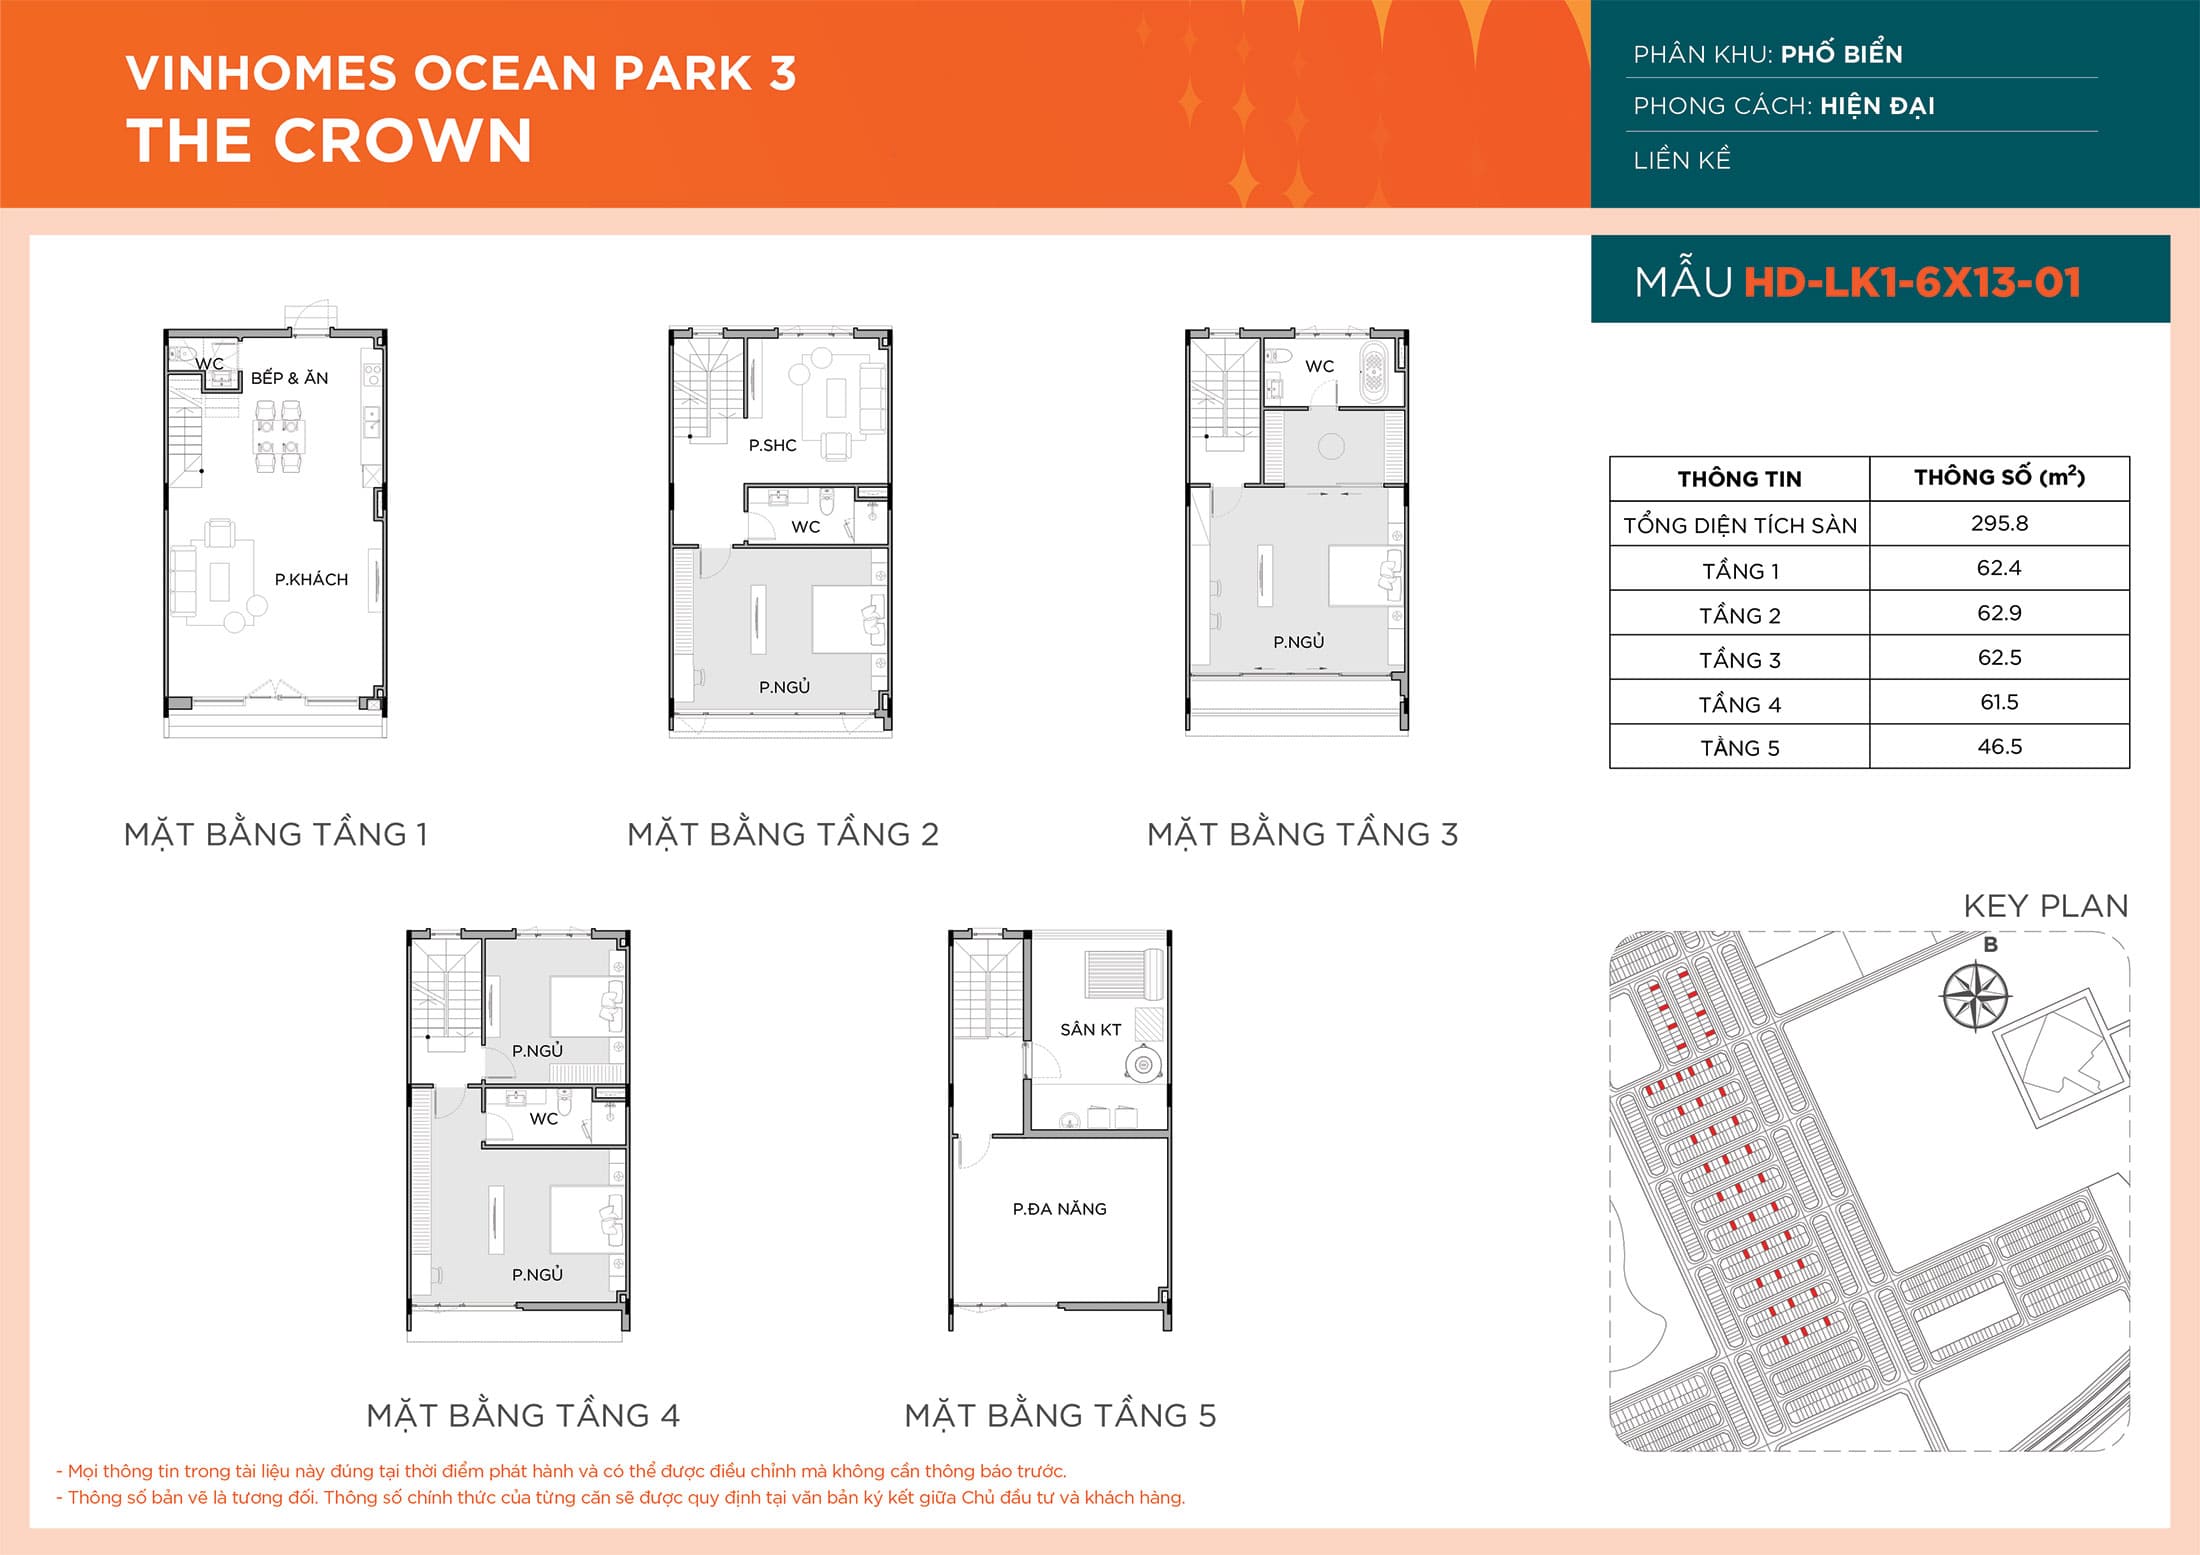 Layout thiết kế Liền Kề HD-LK1-6X13-01 phân khu Phố Biển dự án Vinhomes Ocean Park 3 - The Crown.